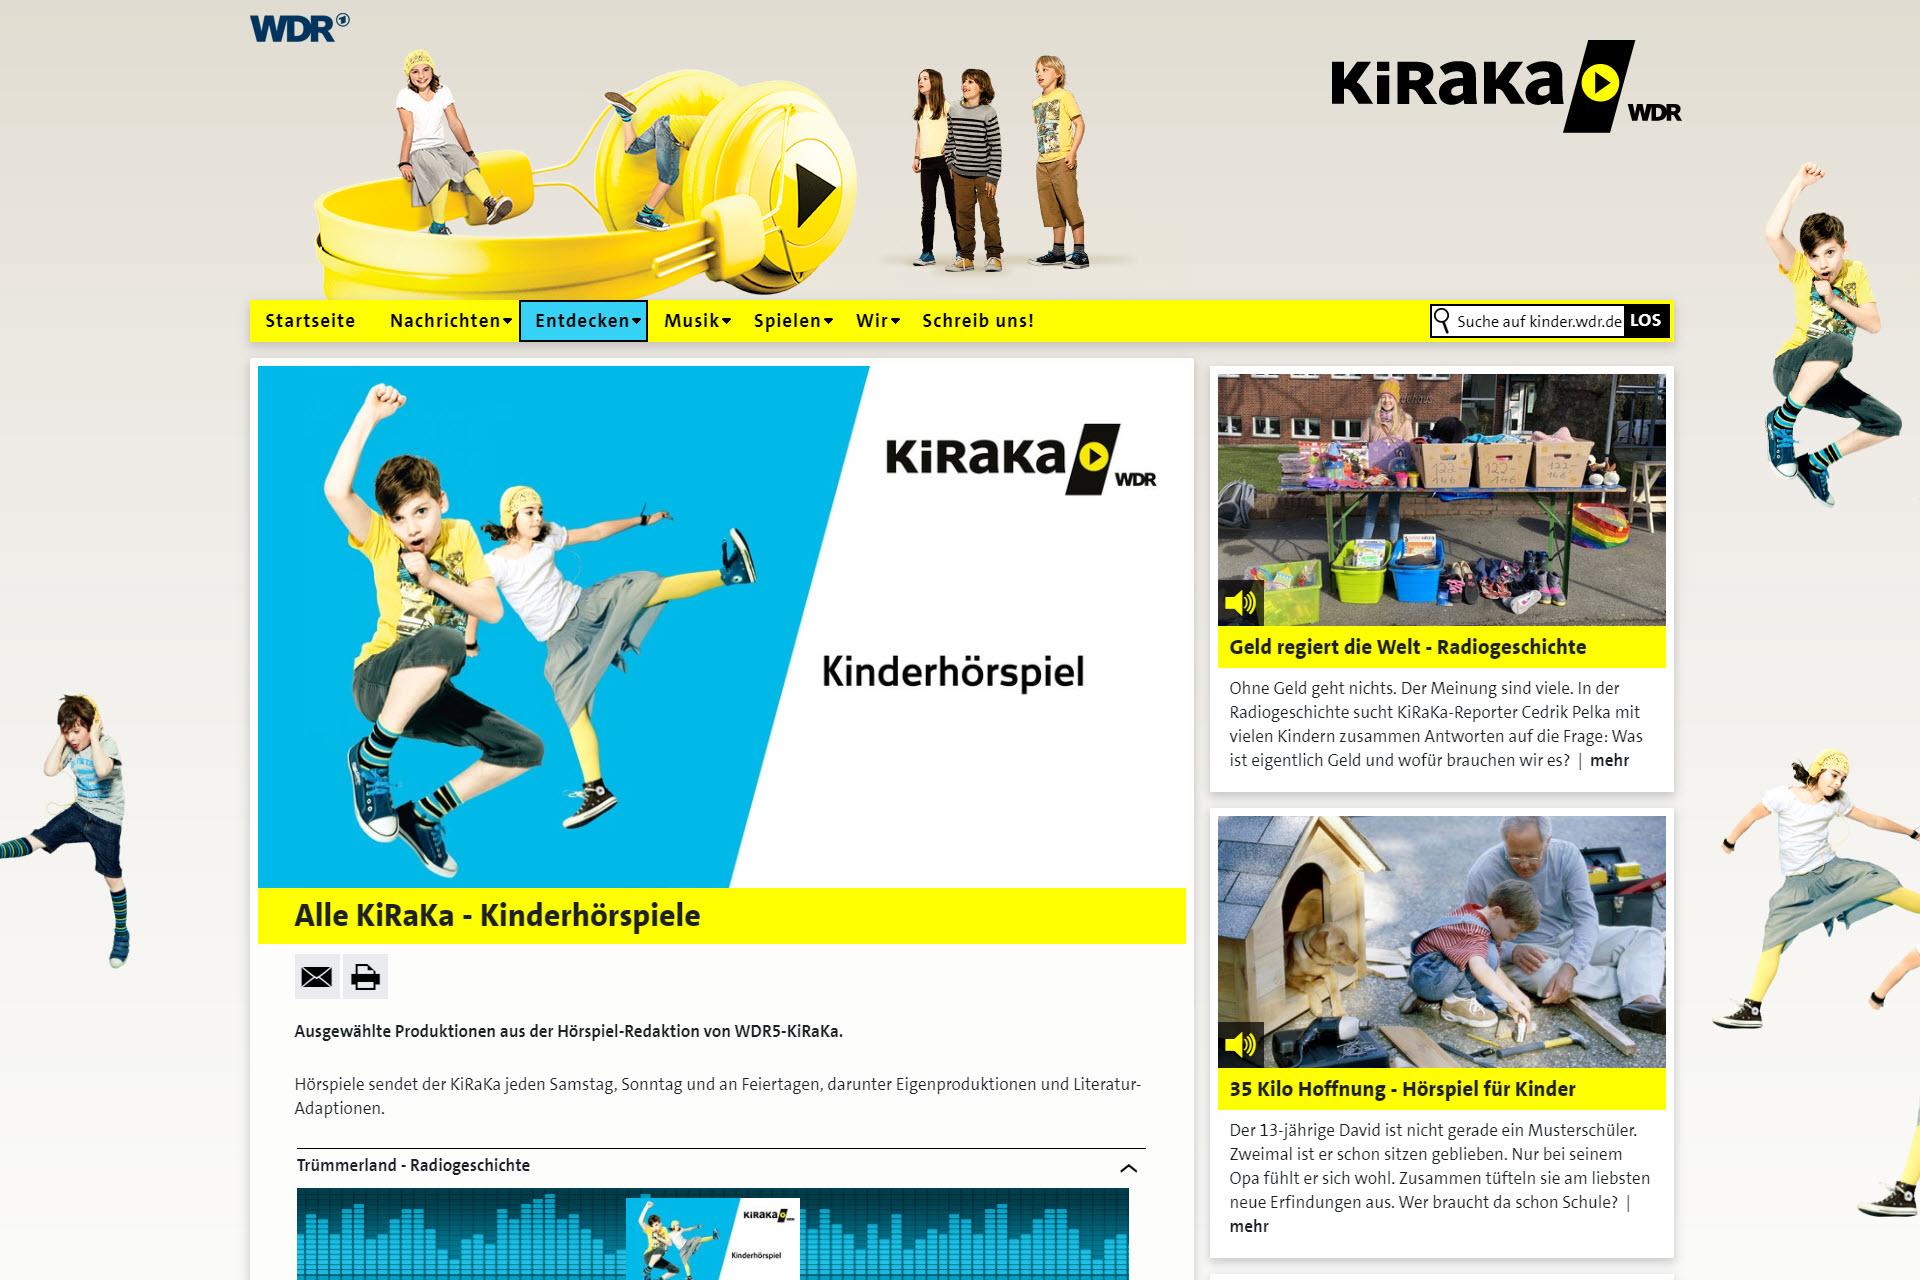 zu den Hörspielen des Kinder-Radiokanals KIRAKA